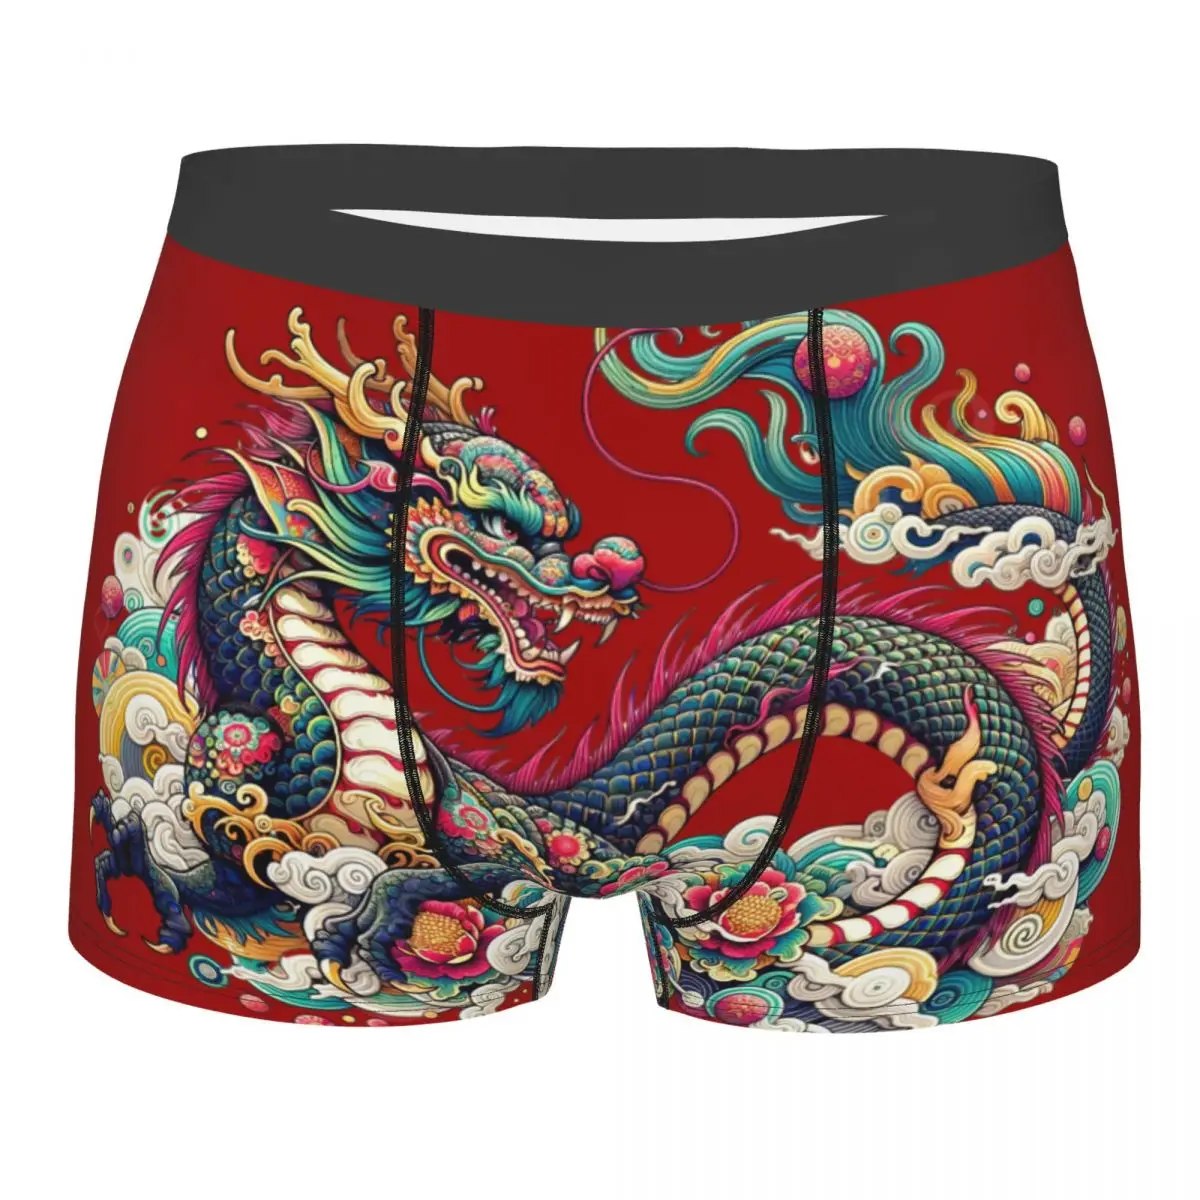 Мужское нижнее белье с китайским драконом, дышащее, отличное качество, идея для подарка